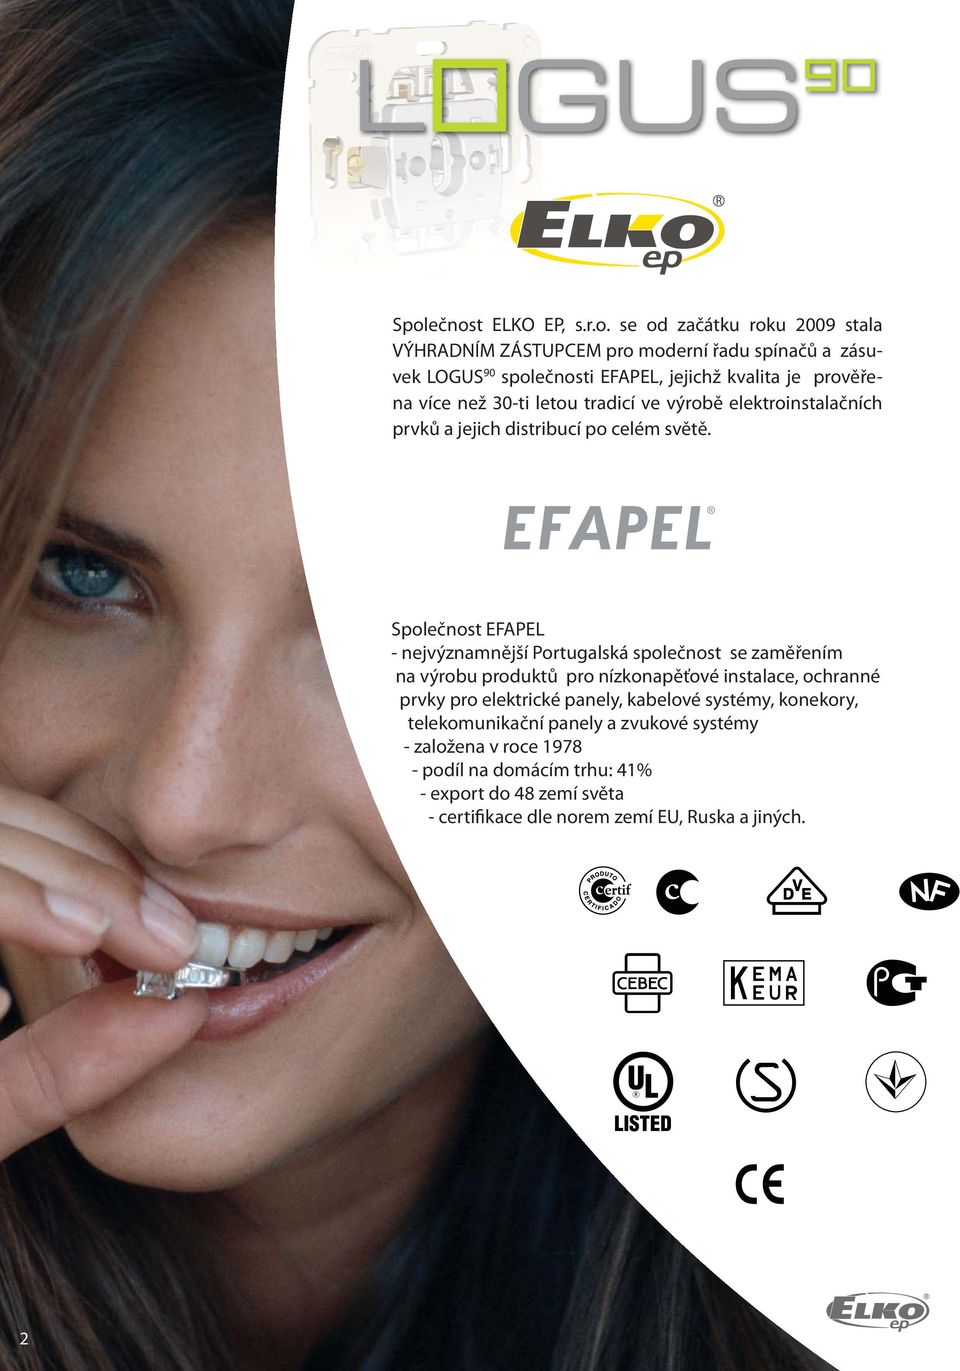 Společnost EFAPEL - nejvýznamnější Portugalská společnost se zaměřením na výrobu produktů pro nízkonapěťové instalace, ochranné prvky pro elektrické